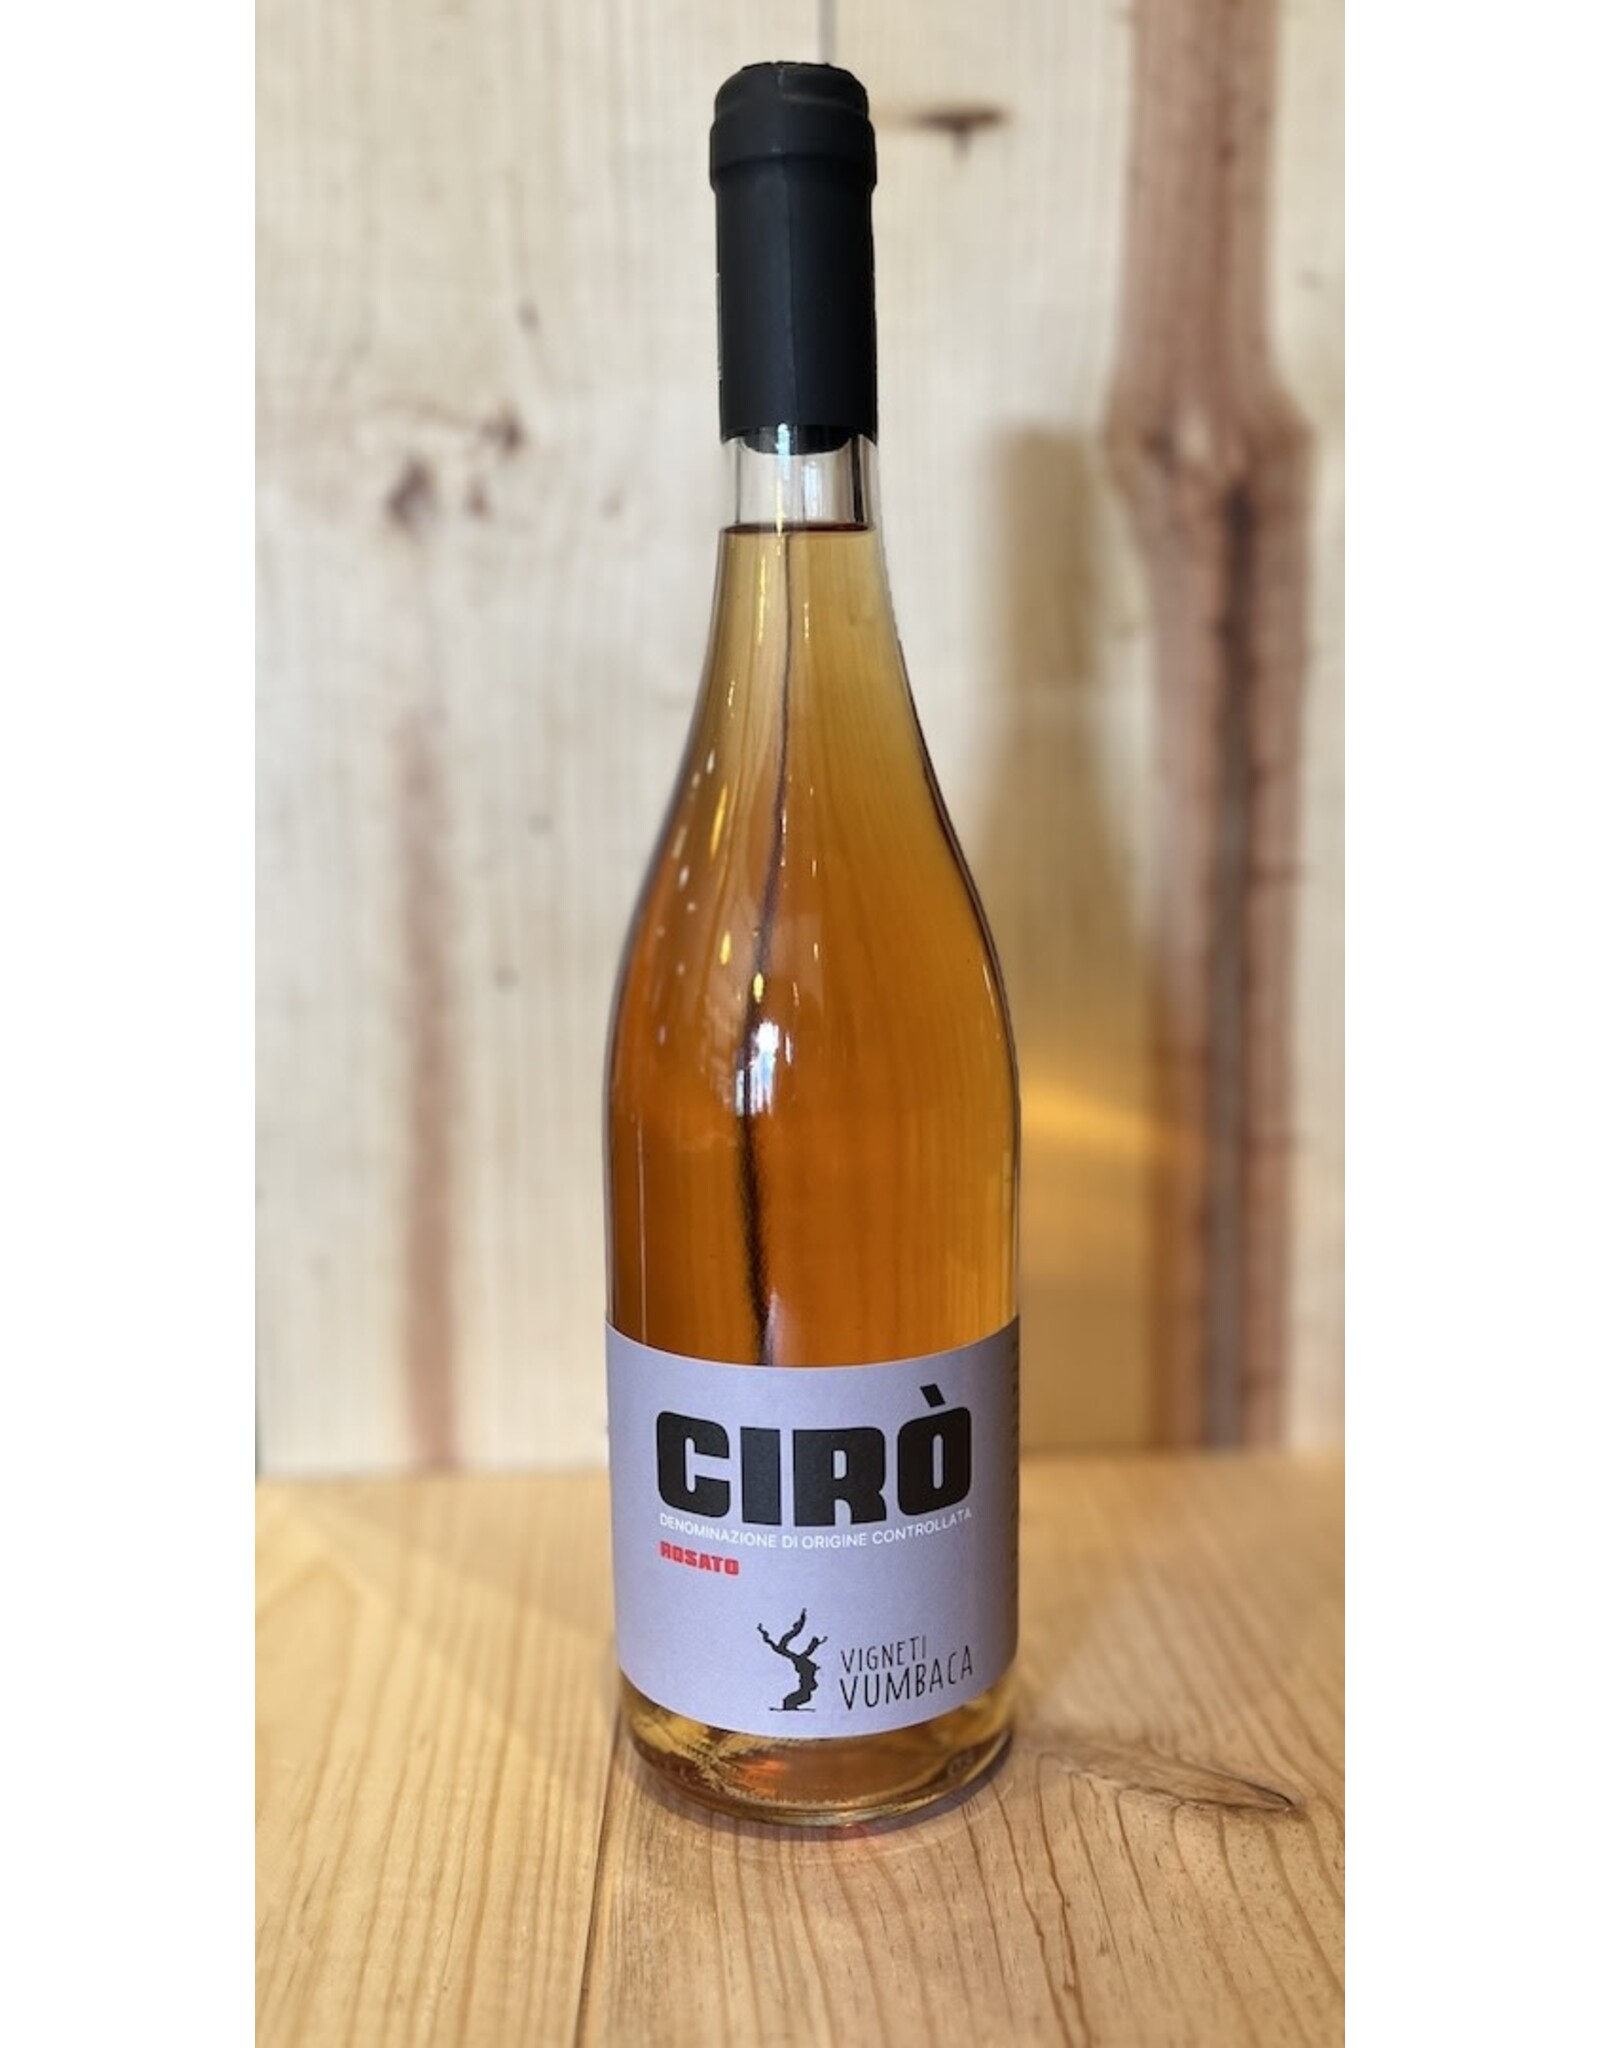 Wine Vumbaca Ciro Rosato